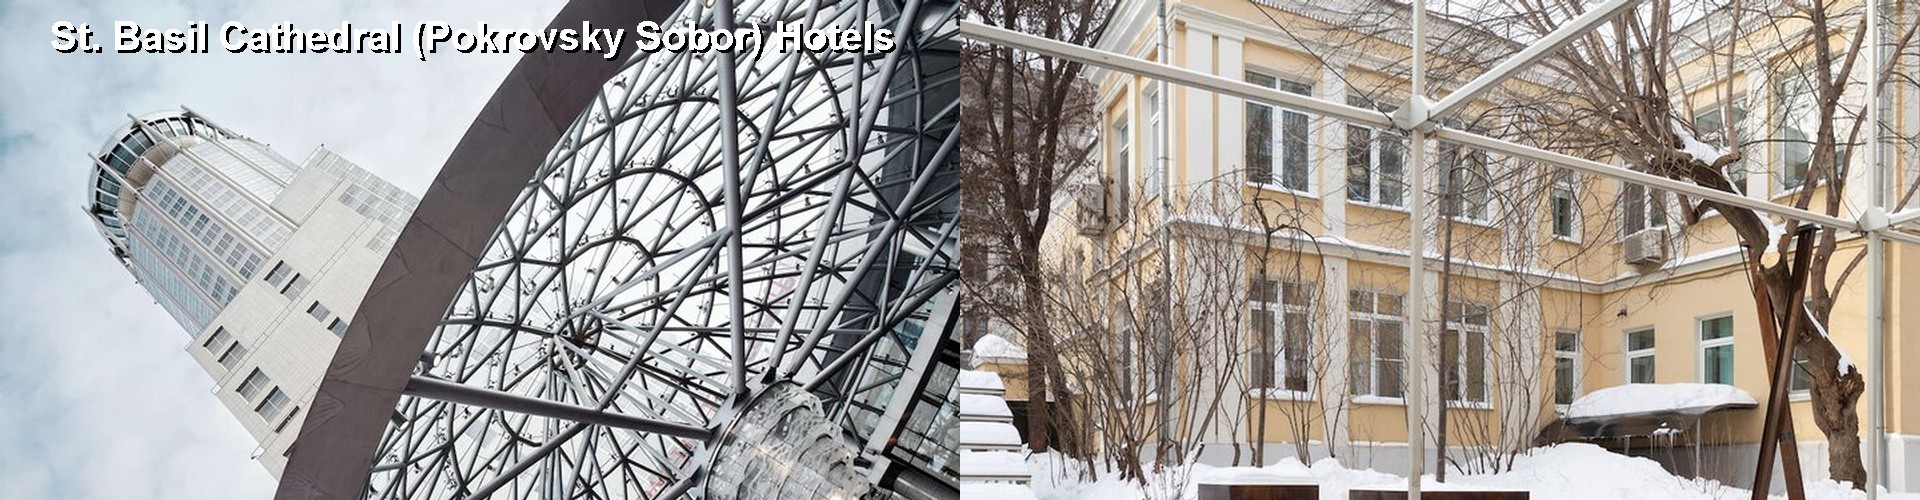 5 Best Hotels near St. Basil Cathedral (Pokrovsky Sobor)